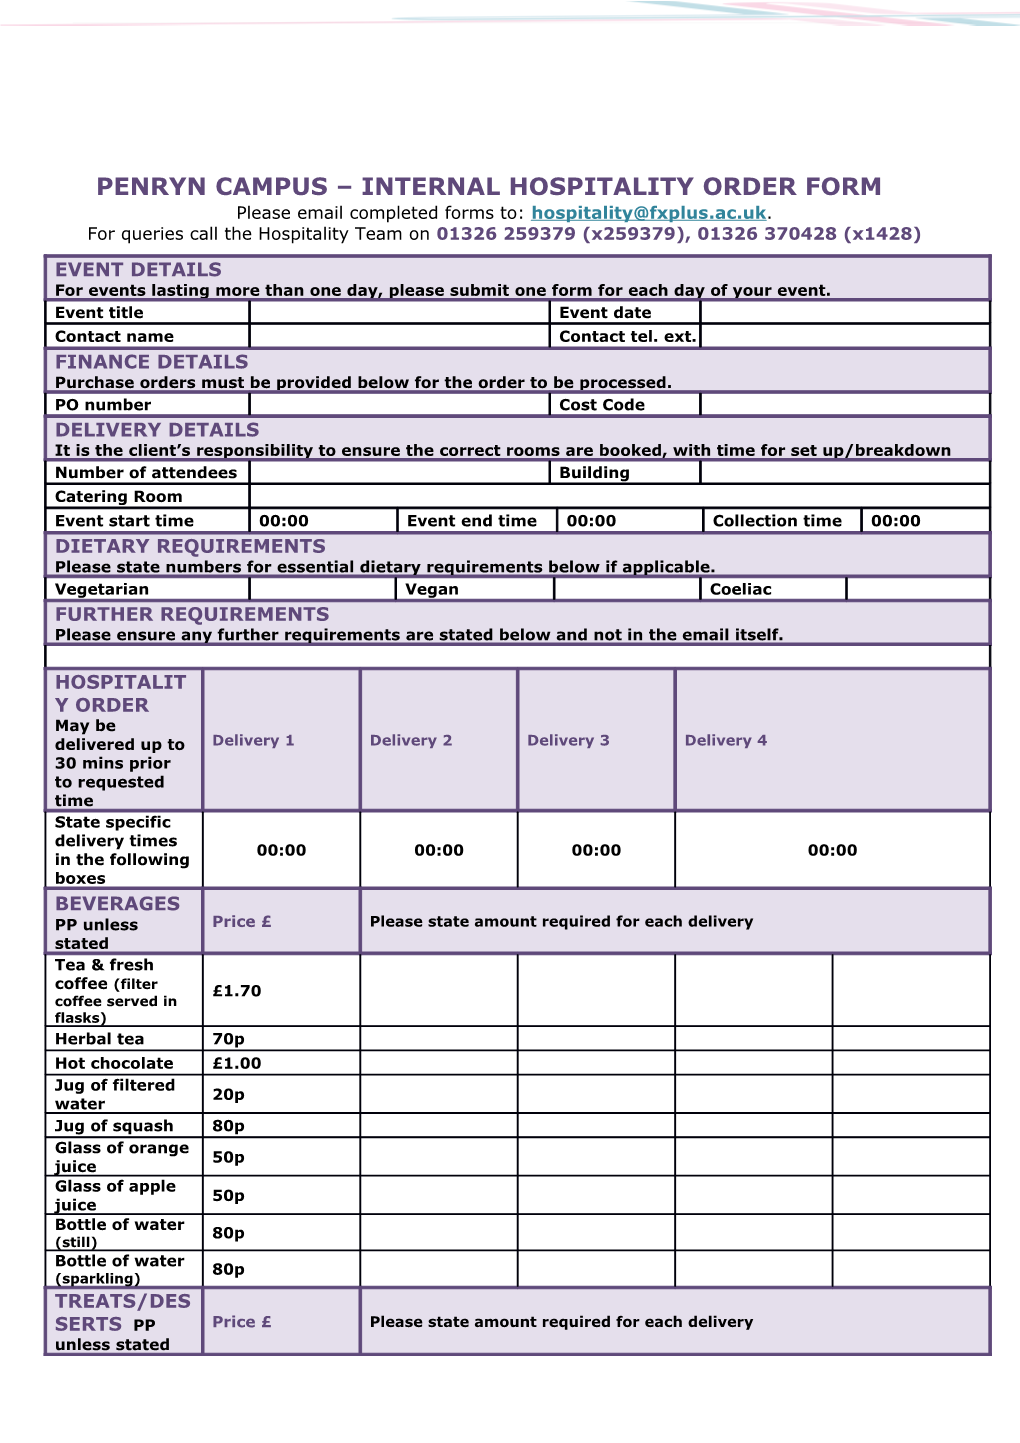 Penryn Campus Internal Hospitality Order Form